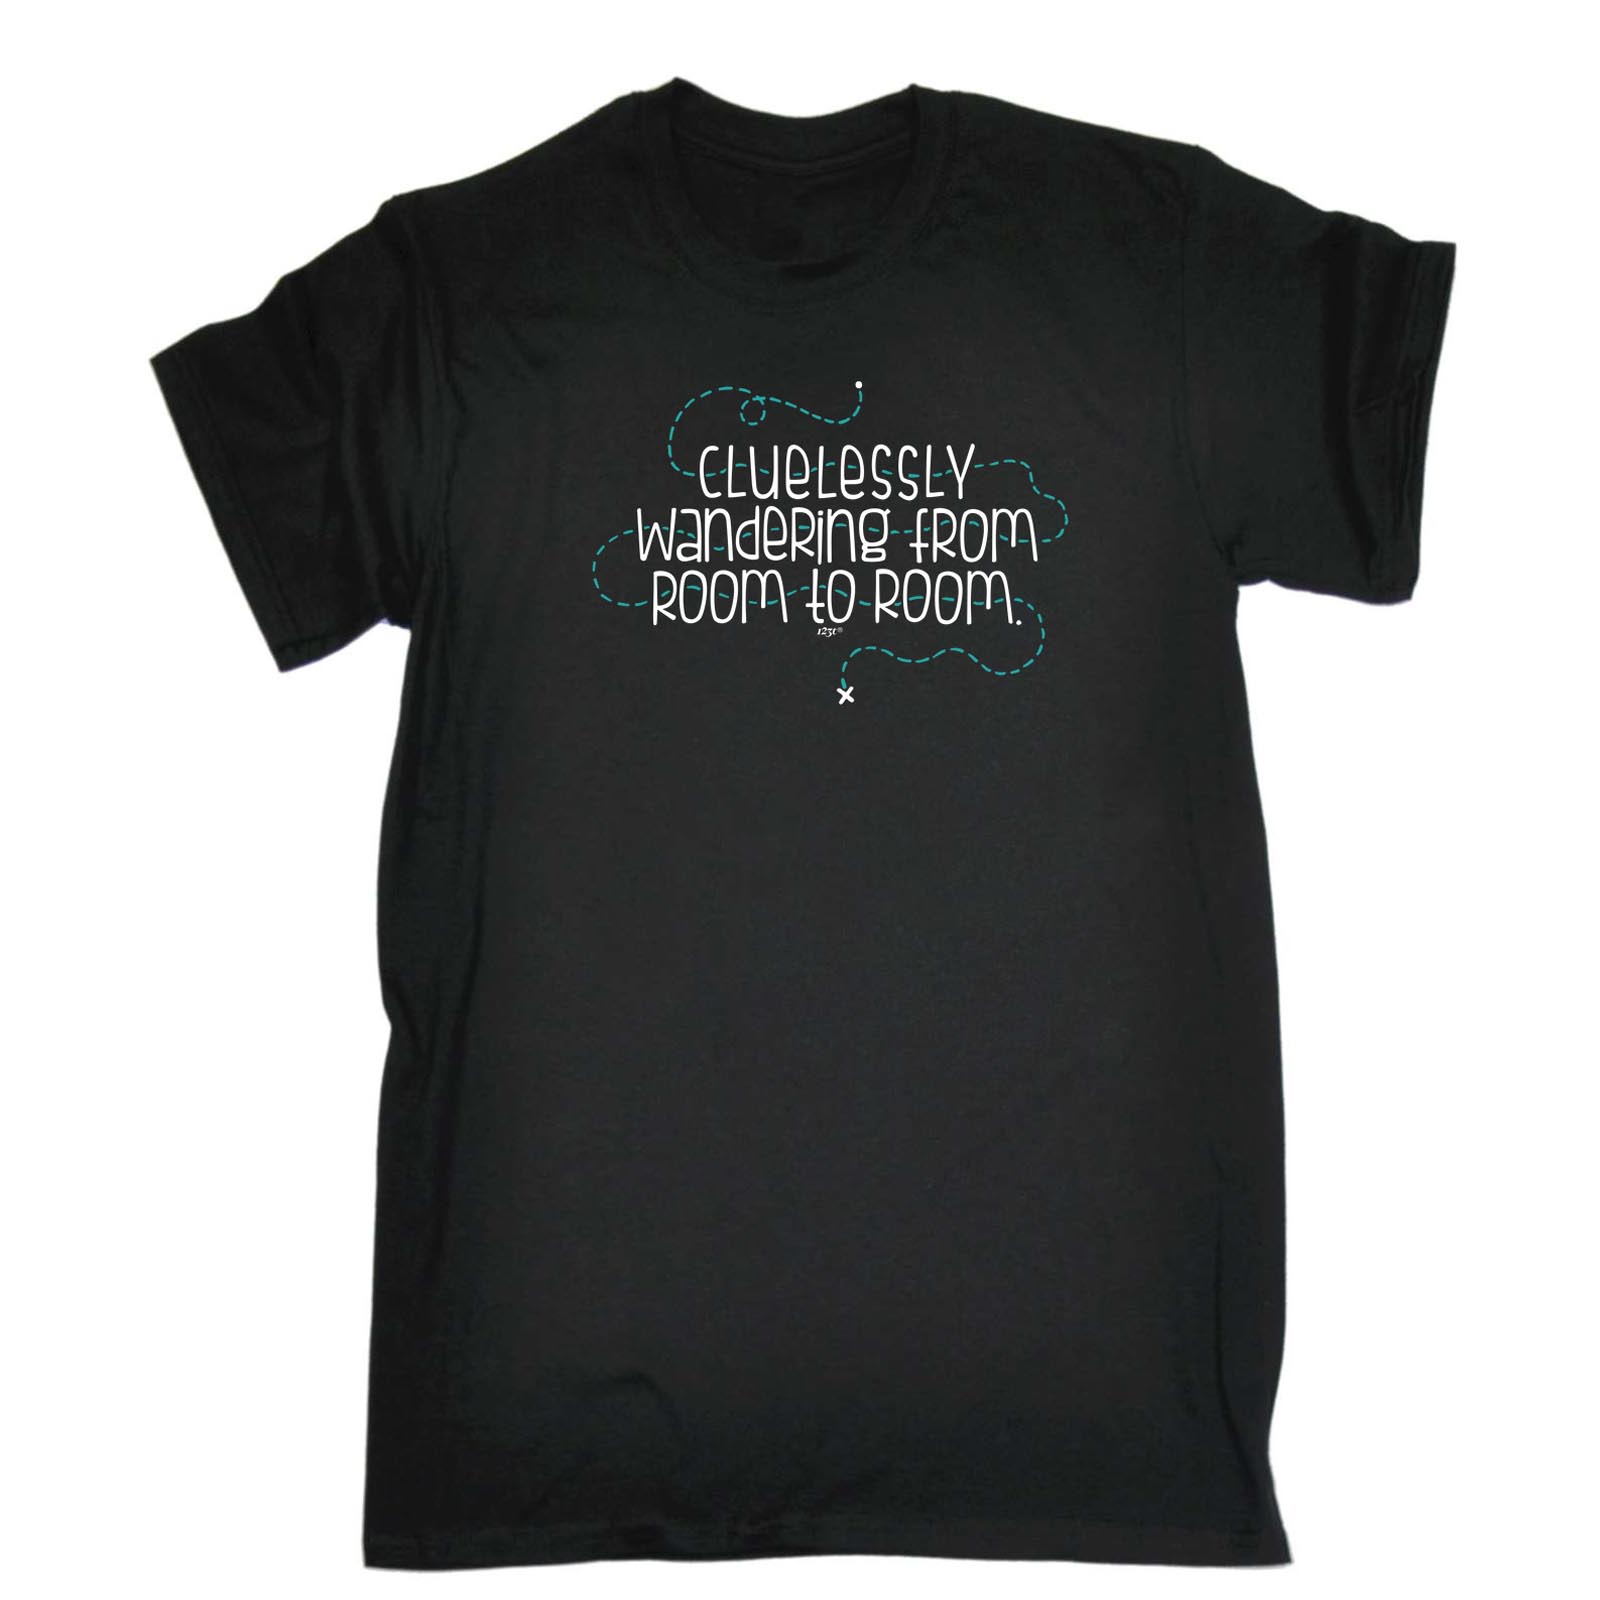 Funny T-Shirt Mens Tee Christmas Birthday Gift Present TShirt SUPER MENS A8